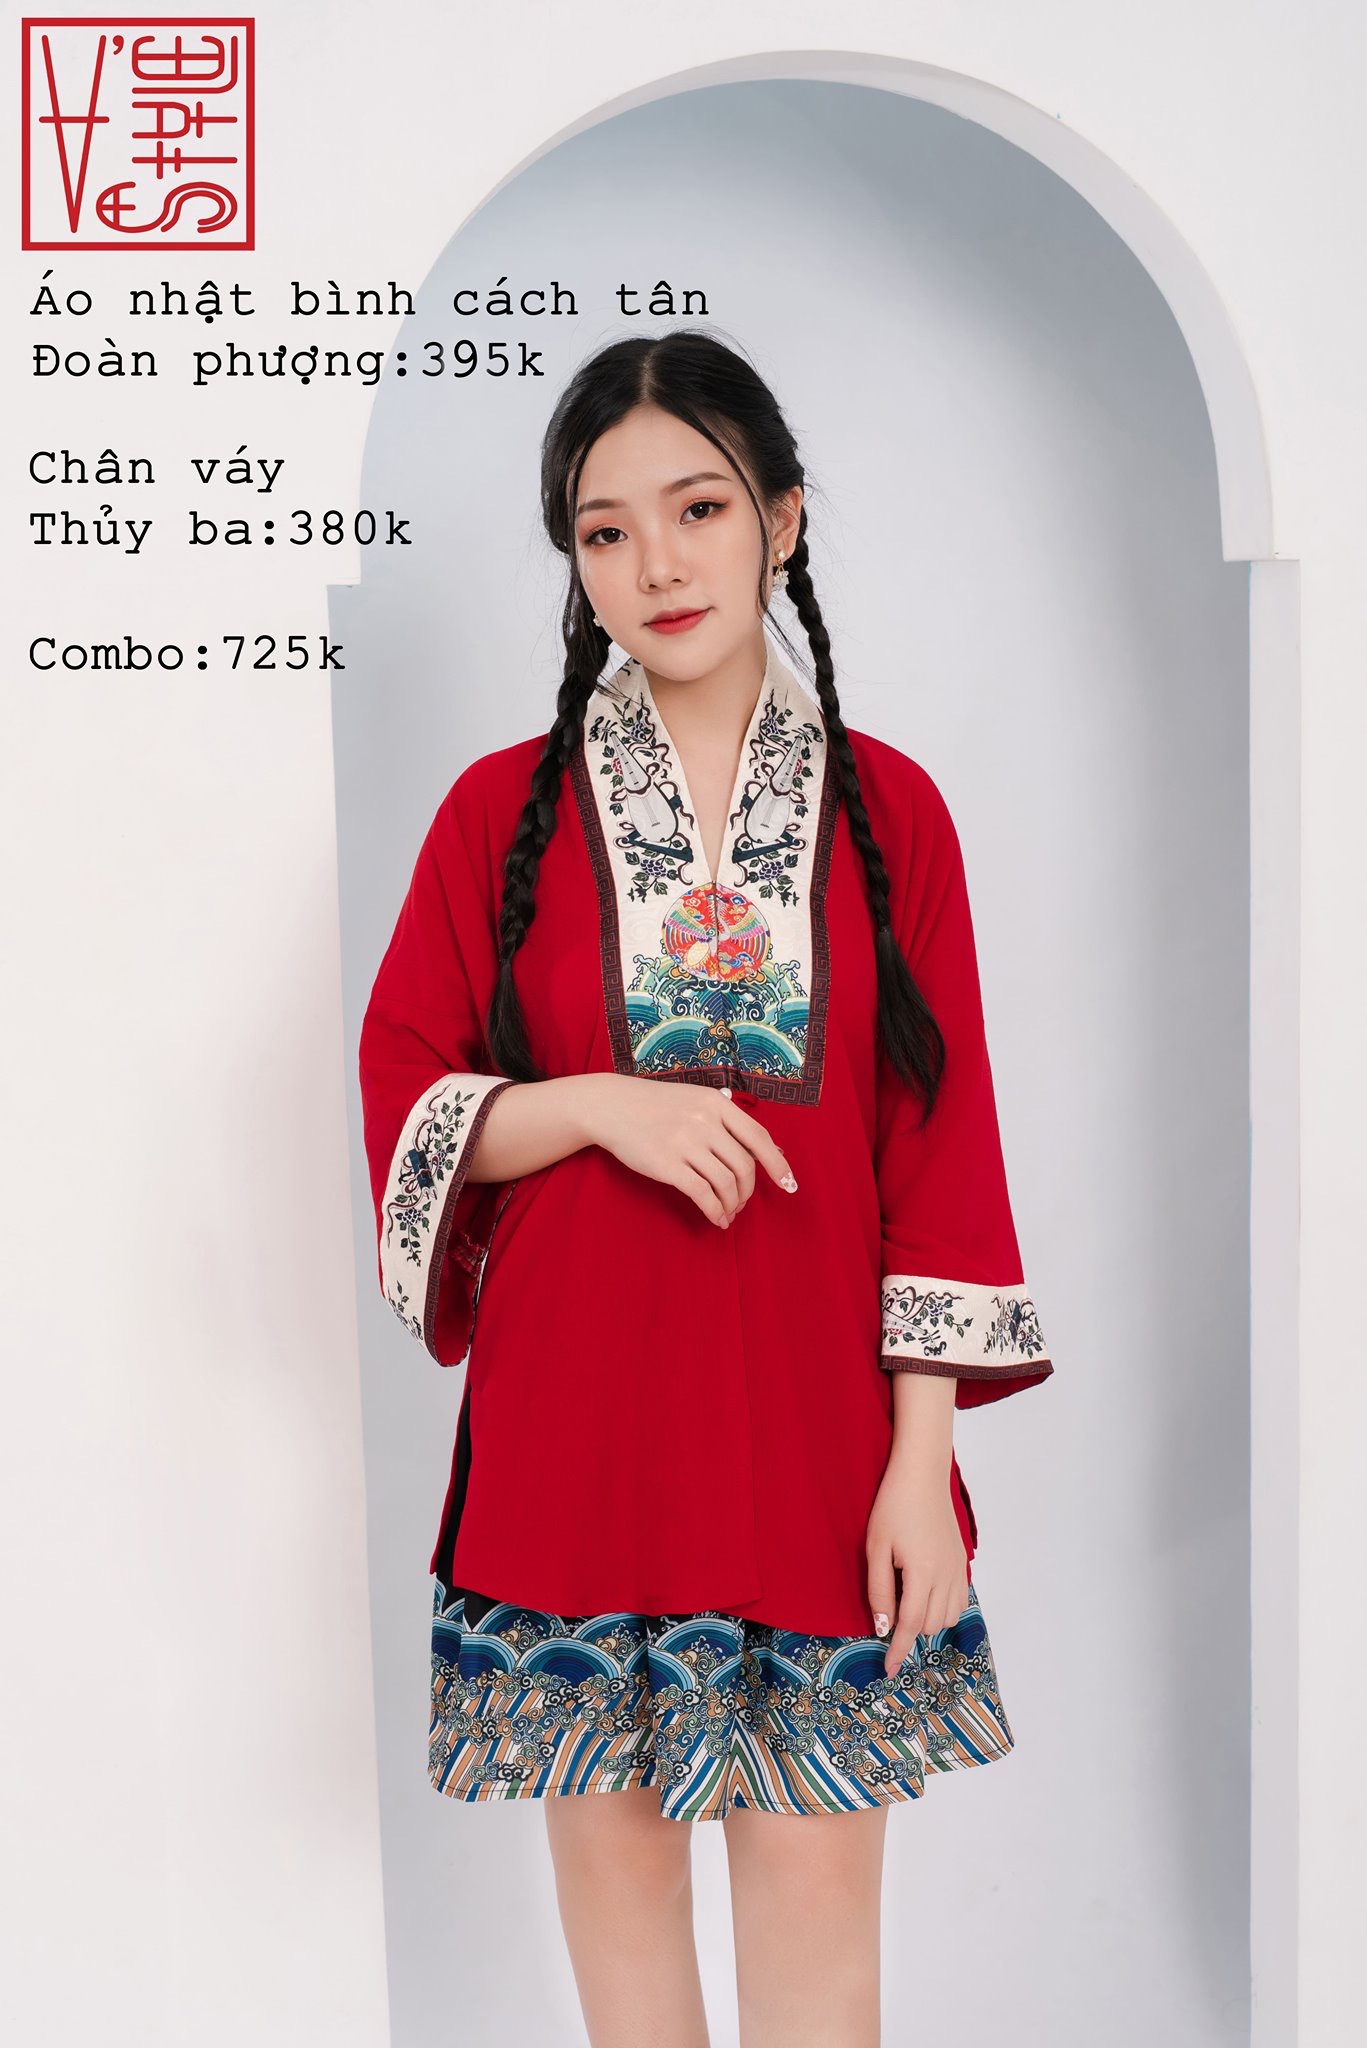 Áo Nhật Bình là gì  Cổ phục mang nét đẹp quý tộc của Việt Nam